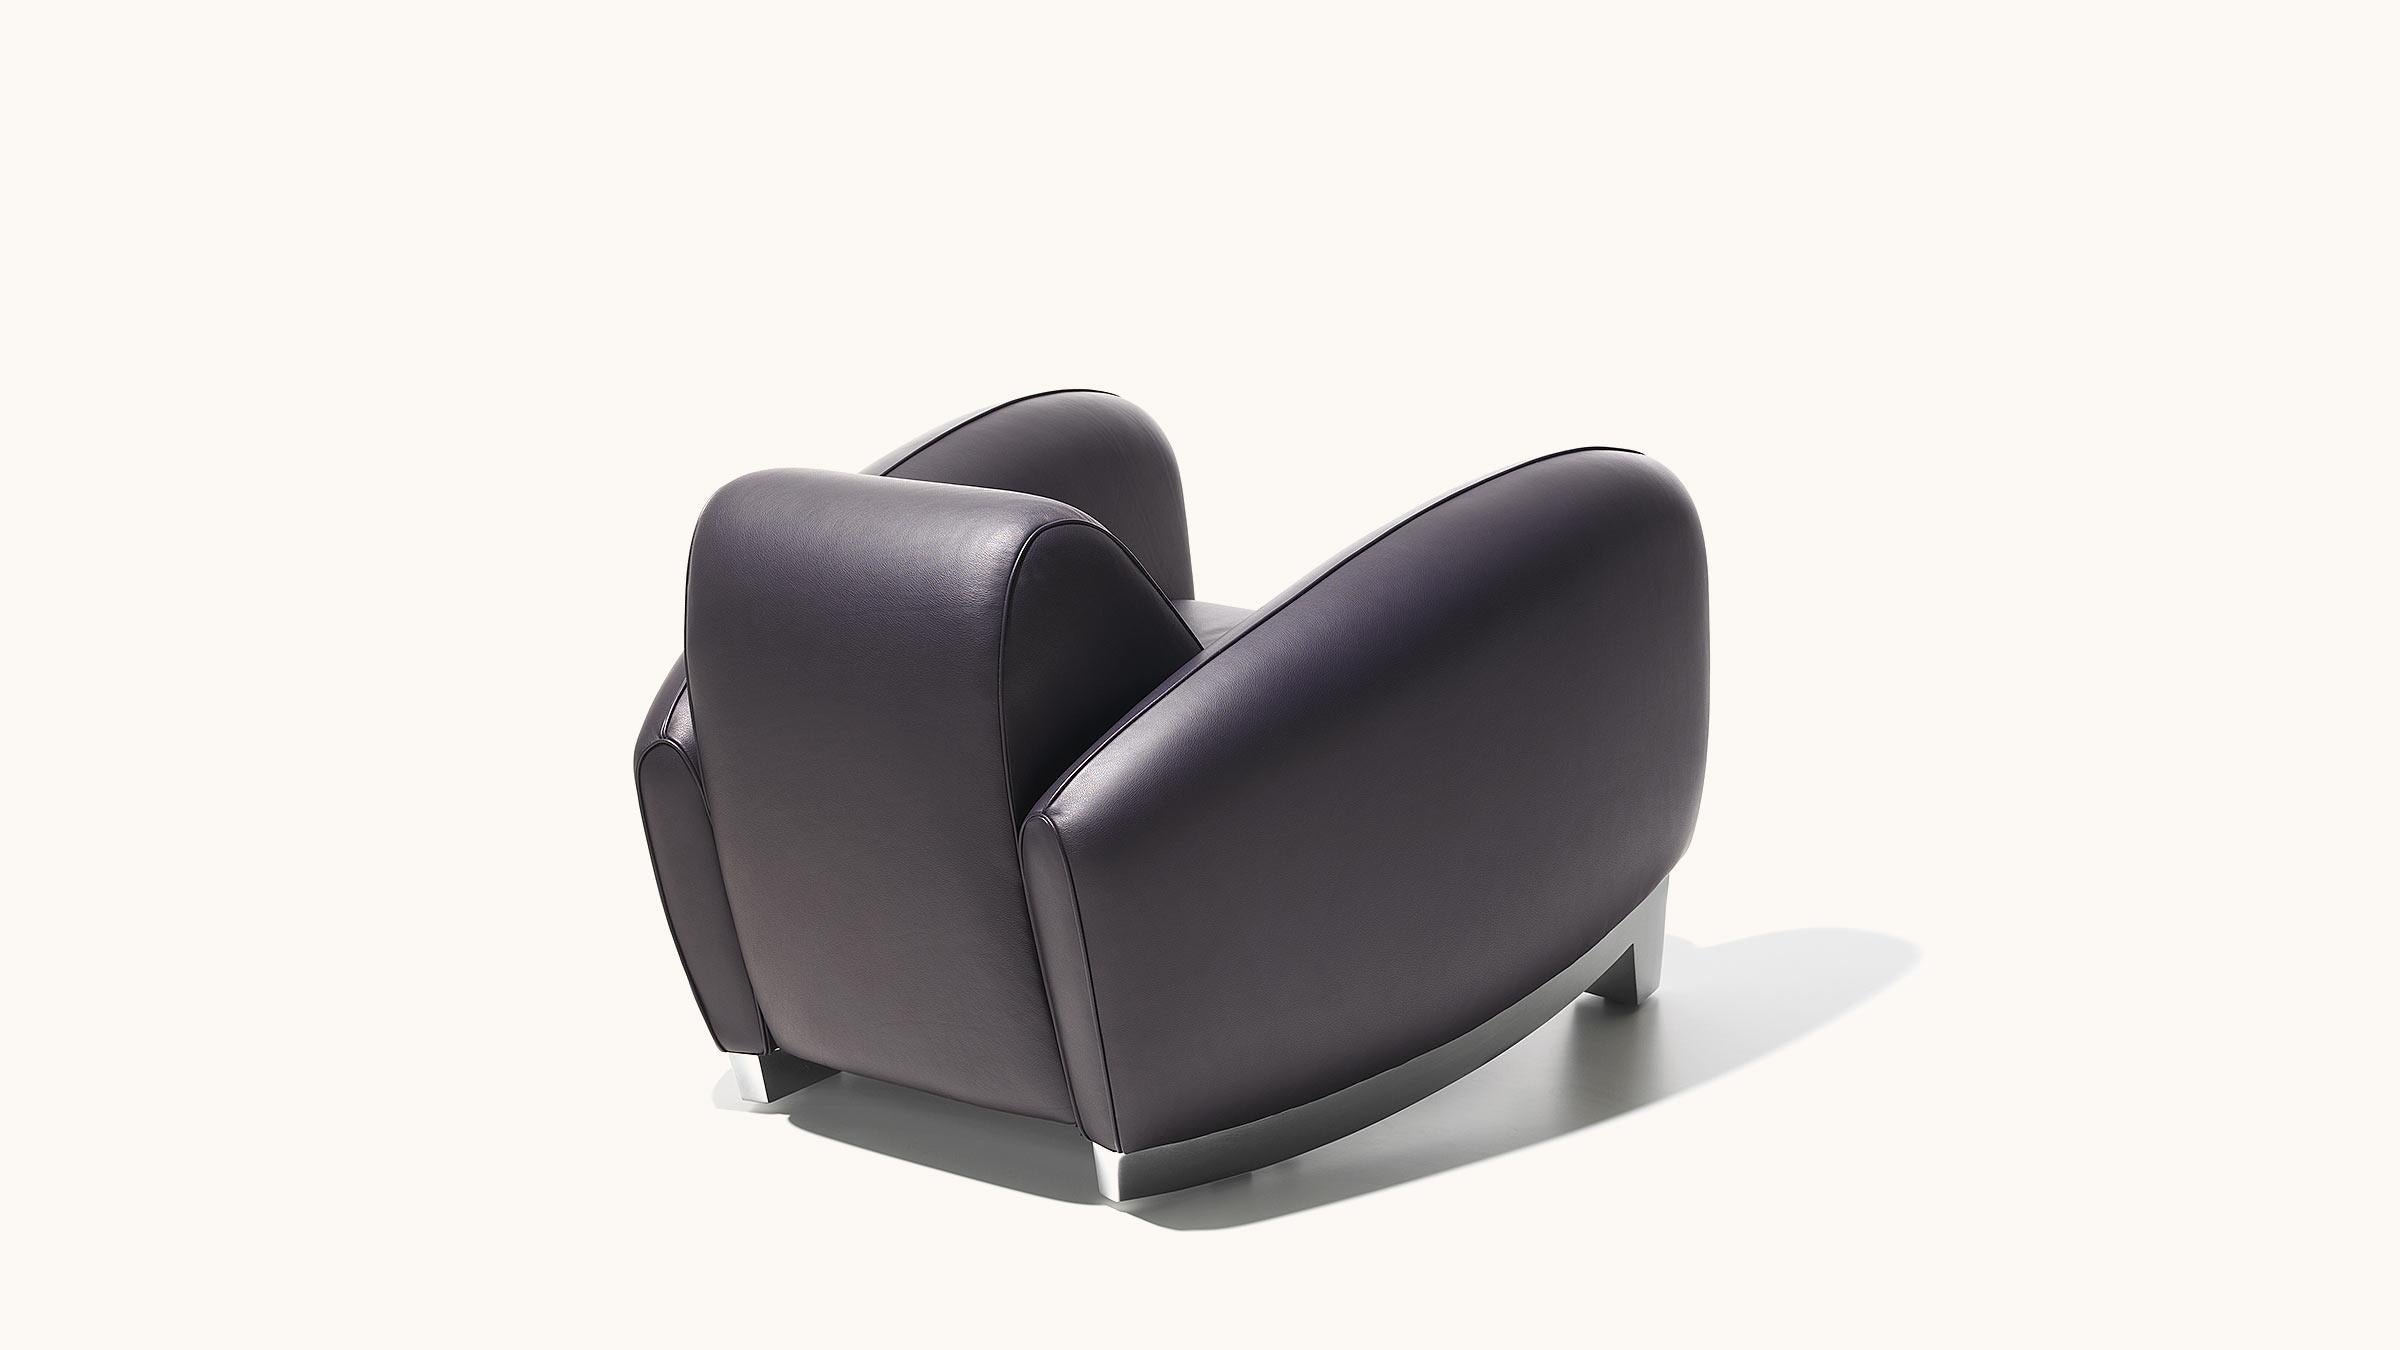 La Bugatti type 57, une icône du design Art déco, a inspiré Franz Romero lorsqu'il a conçu le fauteuil DS-57 pour De Sede. Le designer n'a pas seulement réussi à intégrer le confort d'assise caractéristique des sièges de voiture Bugatti, il a